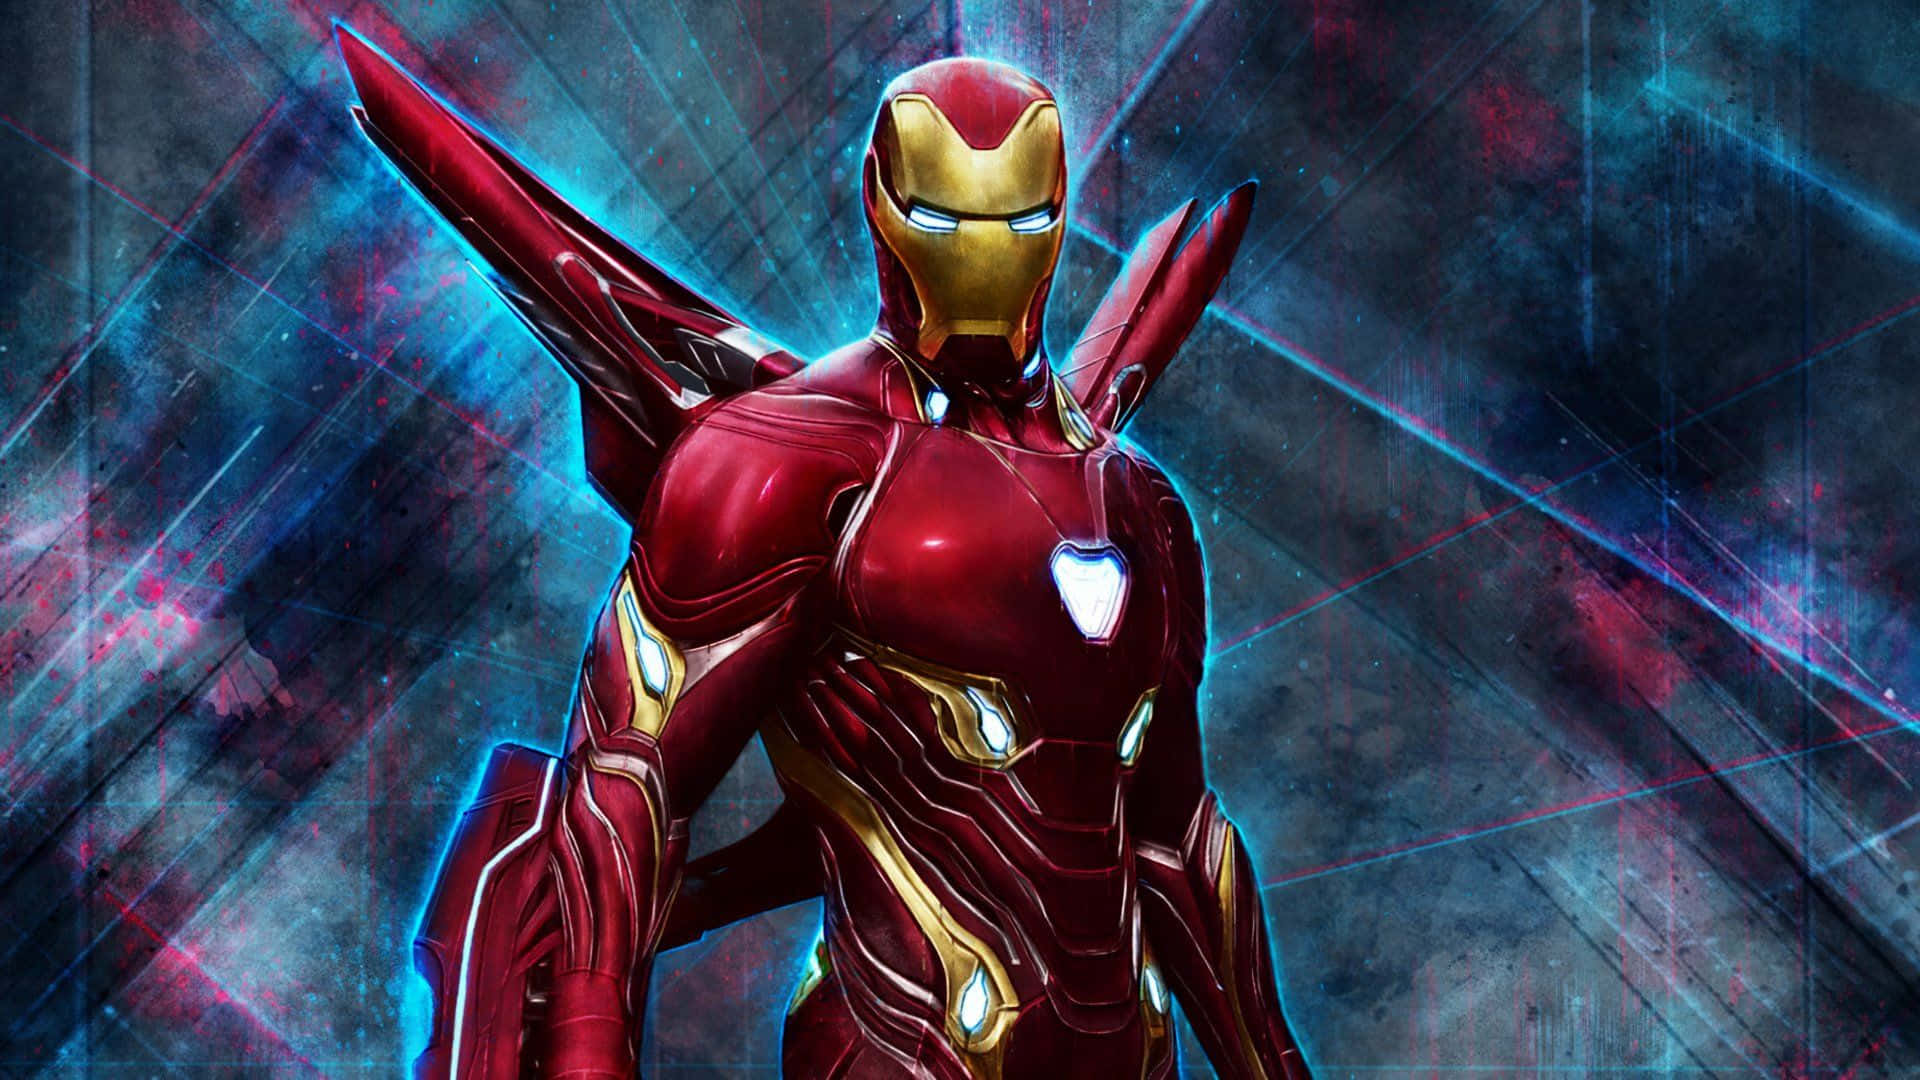 Imagende Alta Resolución De Iron Man, El Héroe De Los Vengadores, Se Une Para Defender El Mundo. Fondo de pantalla